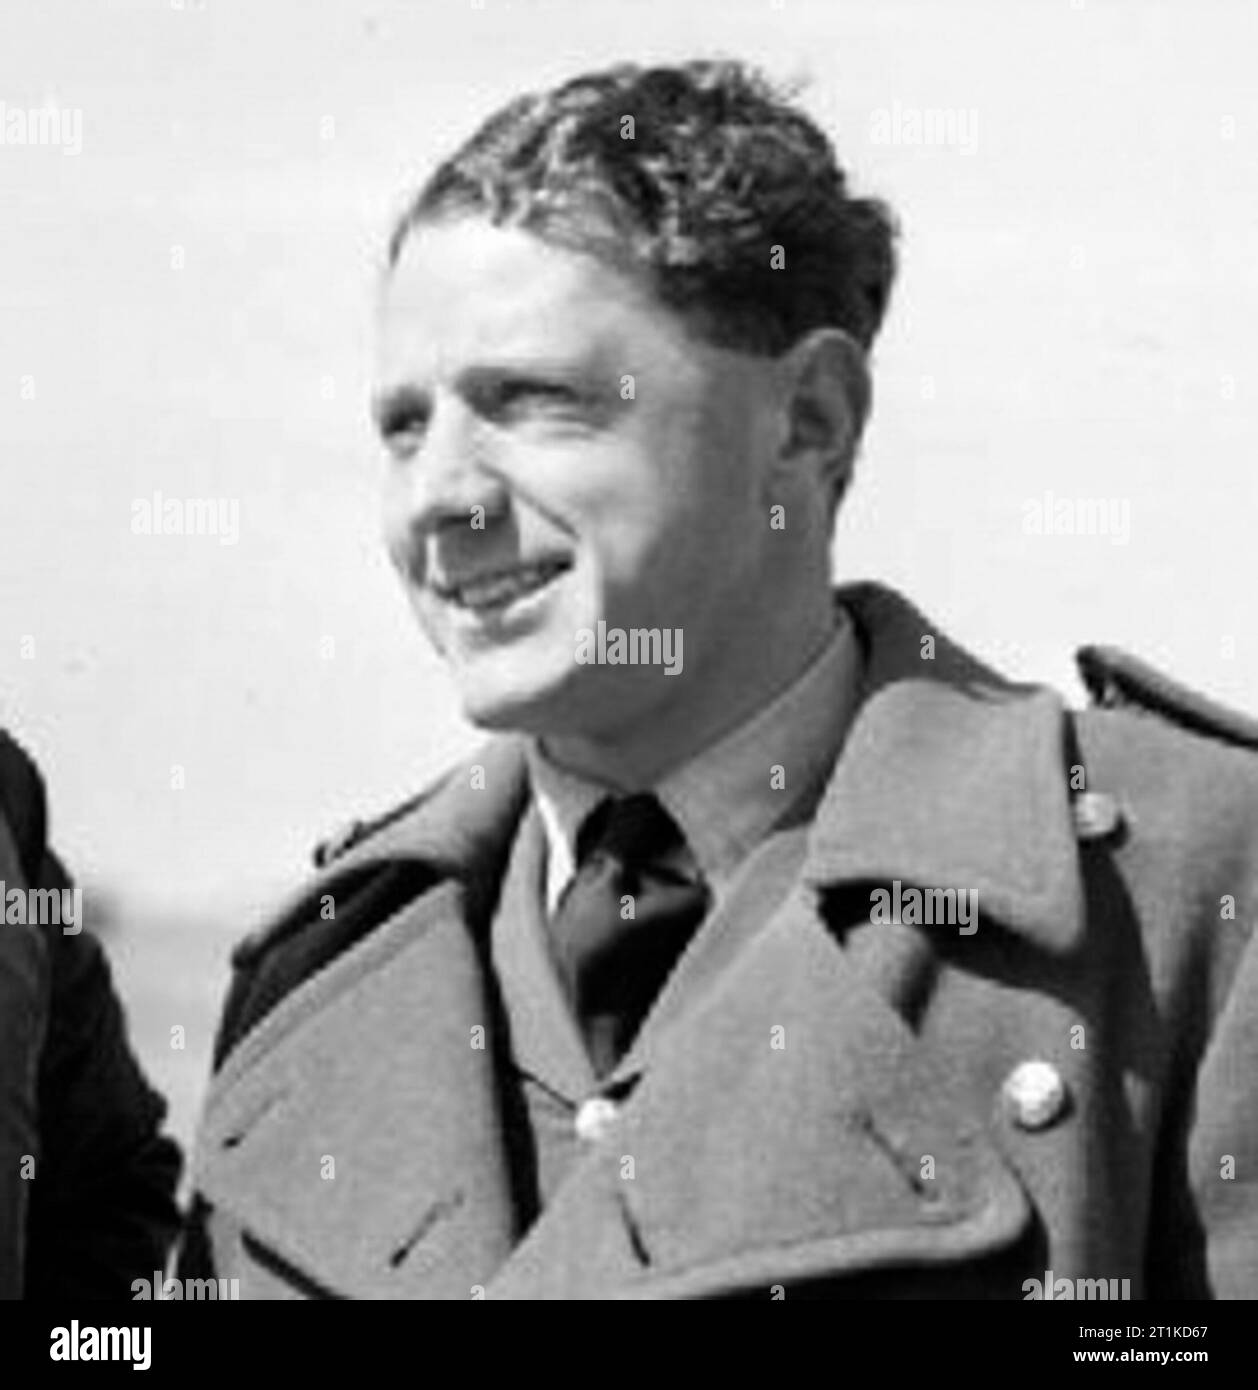 Flugleutnant Caesar Hull von der No. 43 Squadron RAF in Wick, Caithness, zu der Zeit, als er drei feindliche Flugzeuge abgeschossen hatte. Hull wurde im September 1940 Befehlshaber der Geschwader und wurde am 7. September getötet, nachdem er mindestens zehn feindliche Flugzeuge abgeschossen hatte. Stockfoto